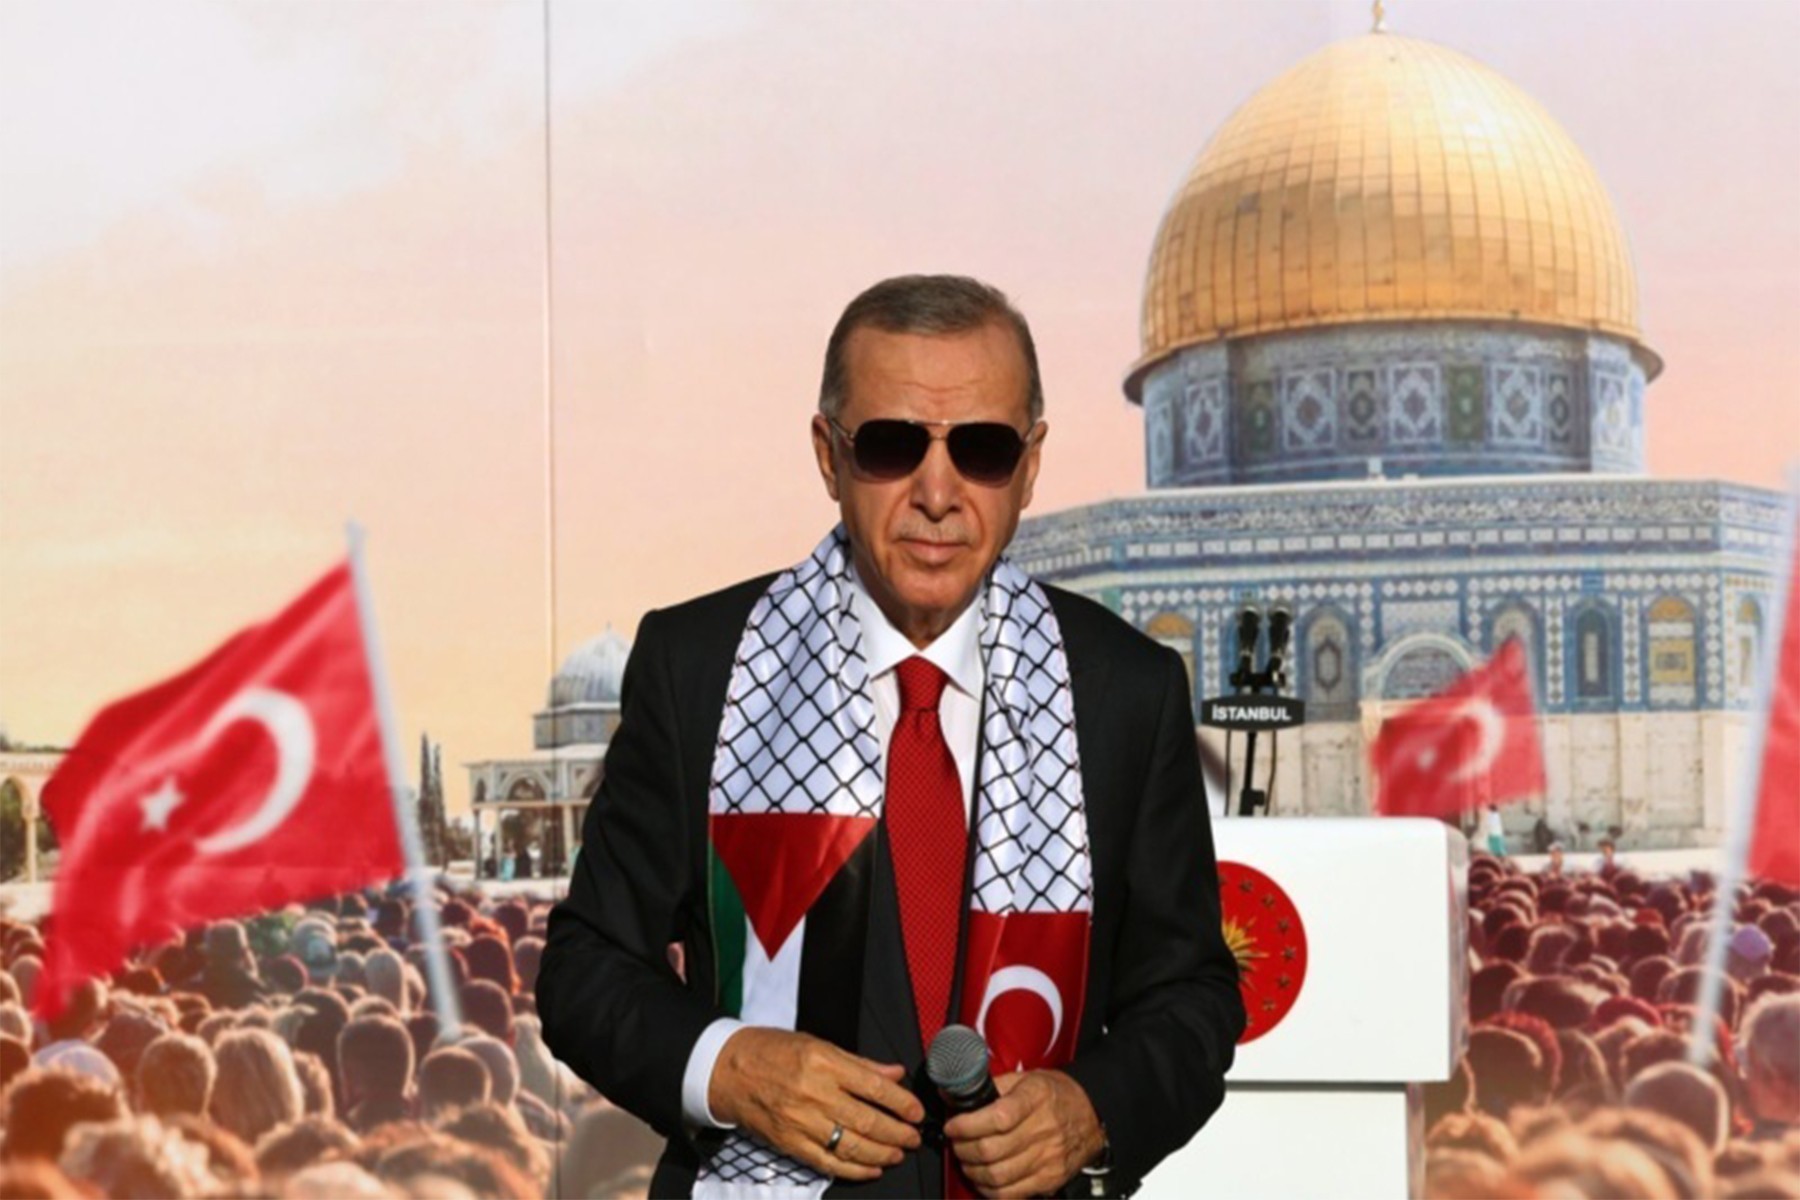 واکنش سیاستمداران اسرائیلی به سخنان اردوغان ترکیه در مقایسه نتانیاهو با هیتلر